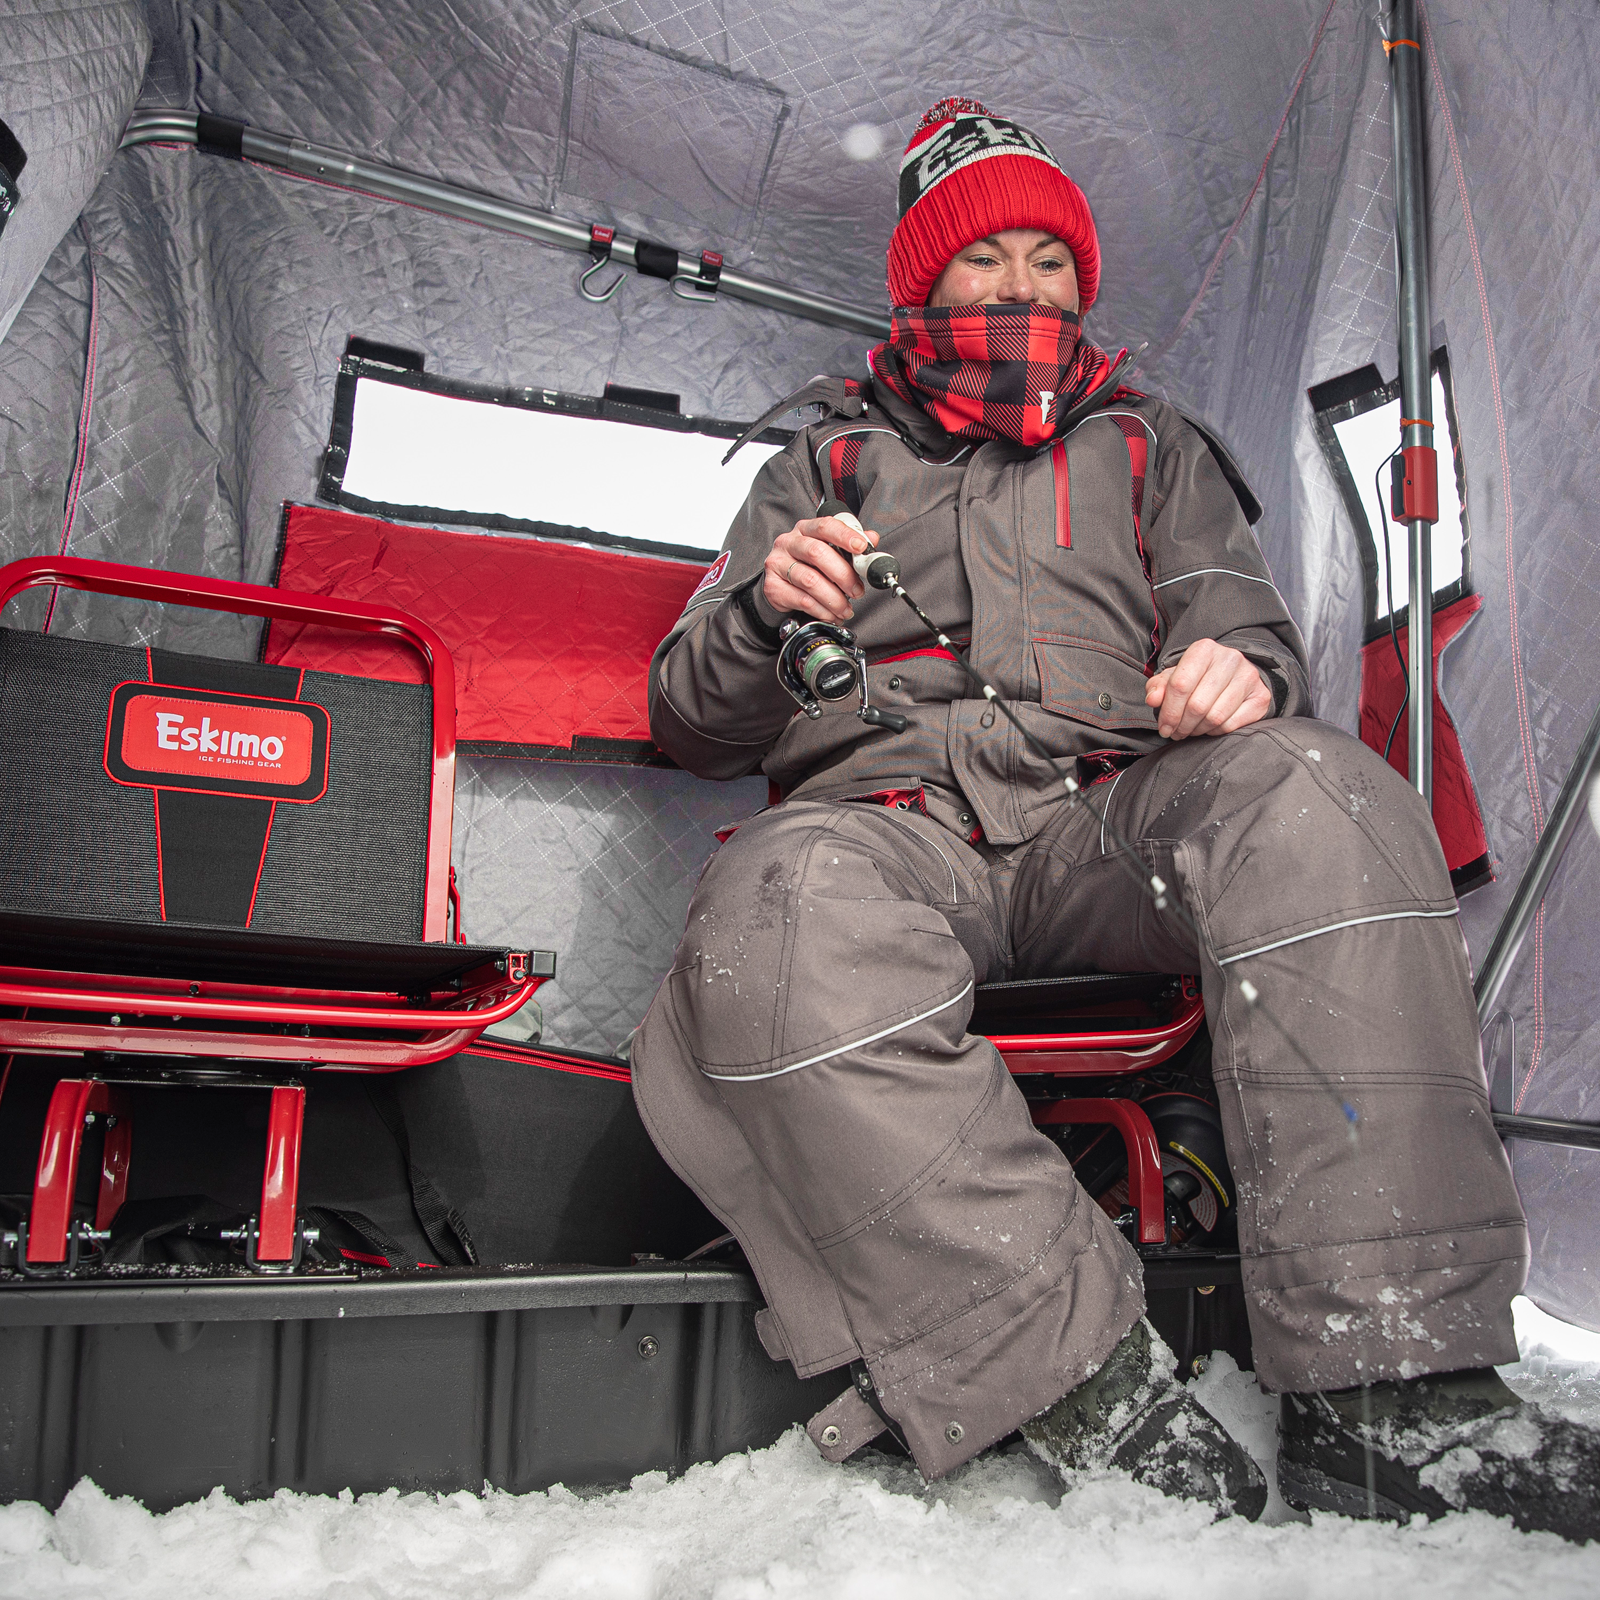 Eskimo Wide 1 Thermal Flip-Over Shelter